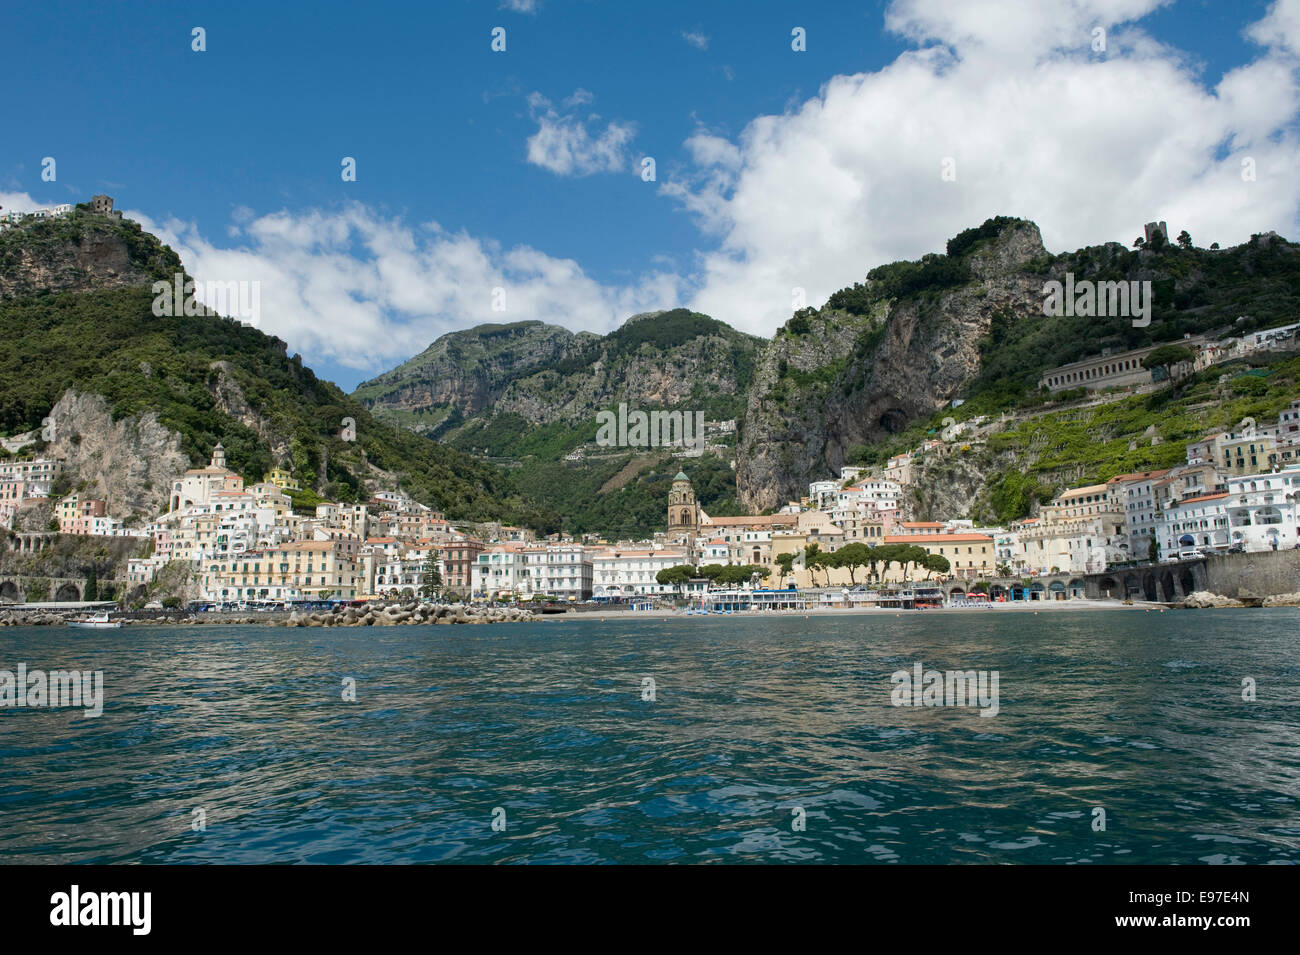 La ville de Atrani près de Amalfi vu depuis un bateau sur la baie de Salerne, Province de Salerne, Campanie, Italie Mai Banque D'Images